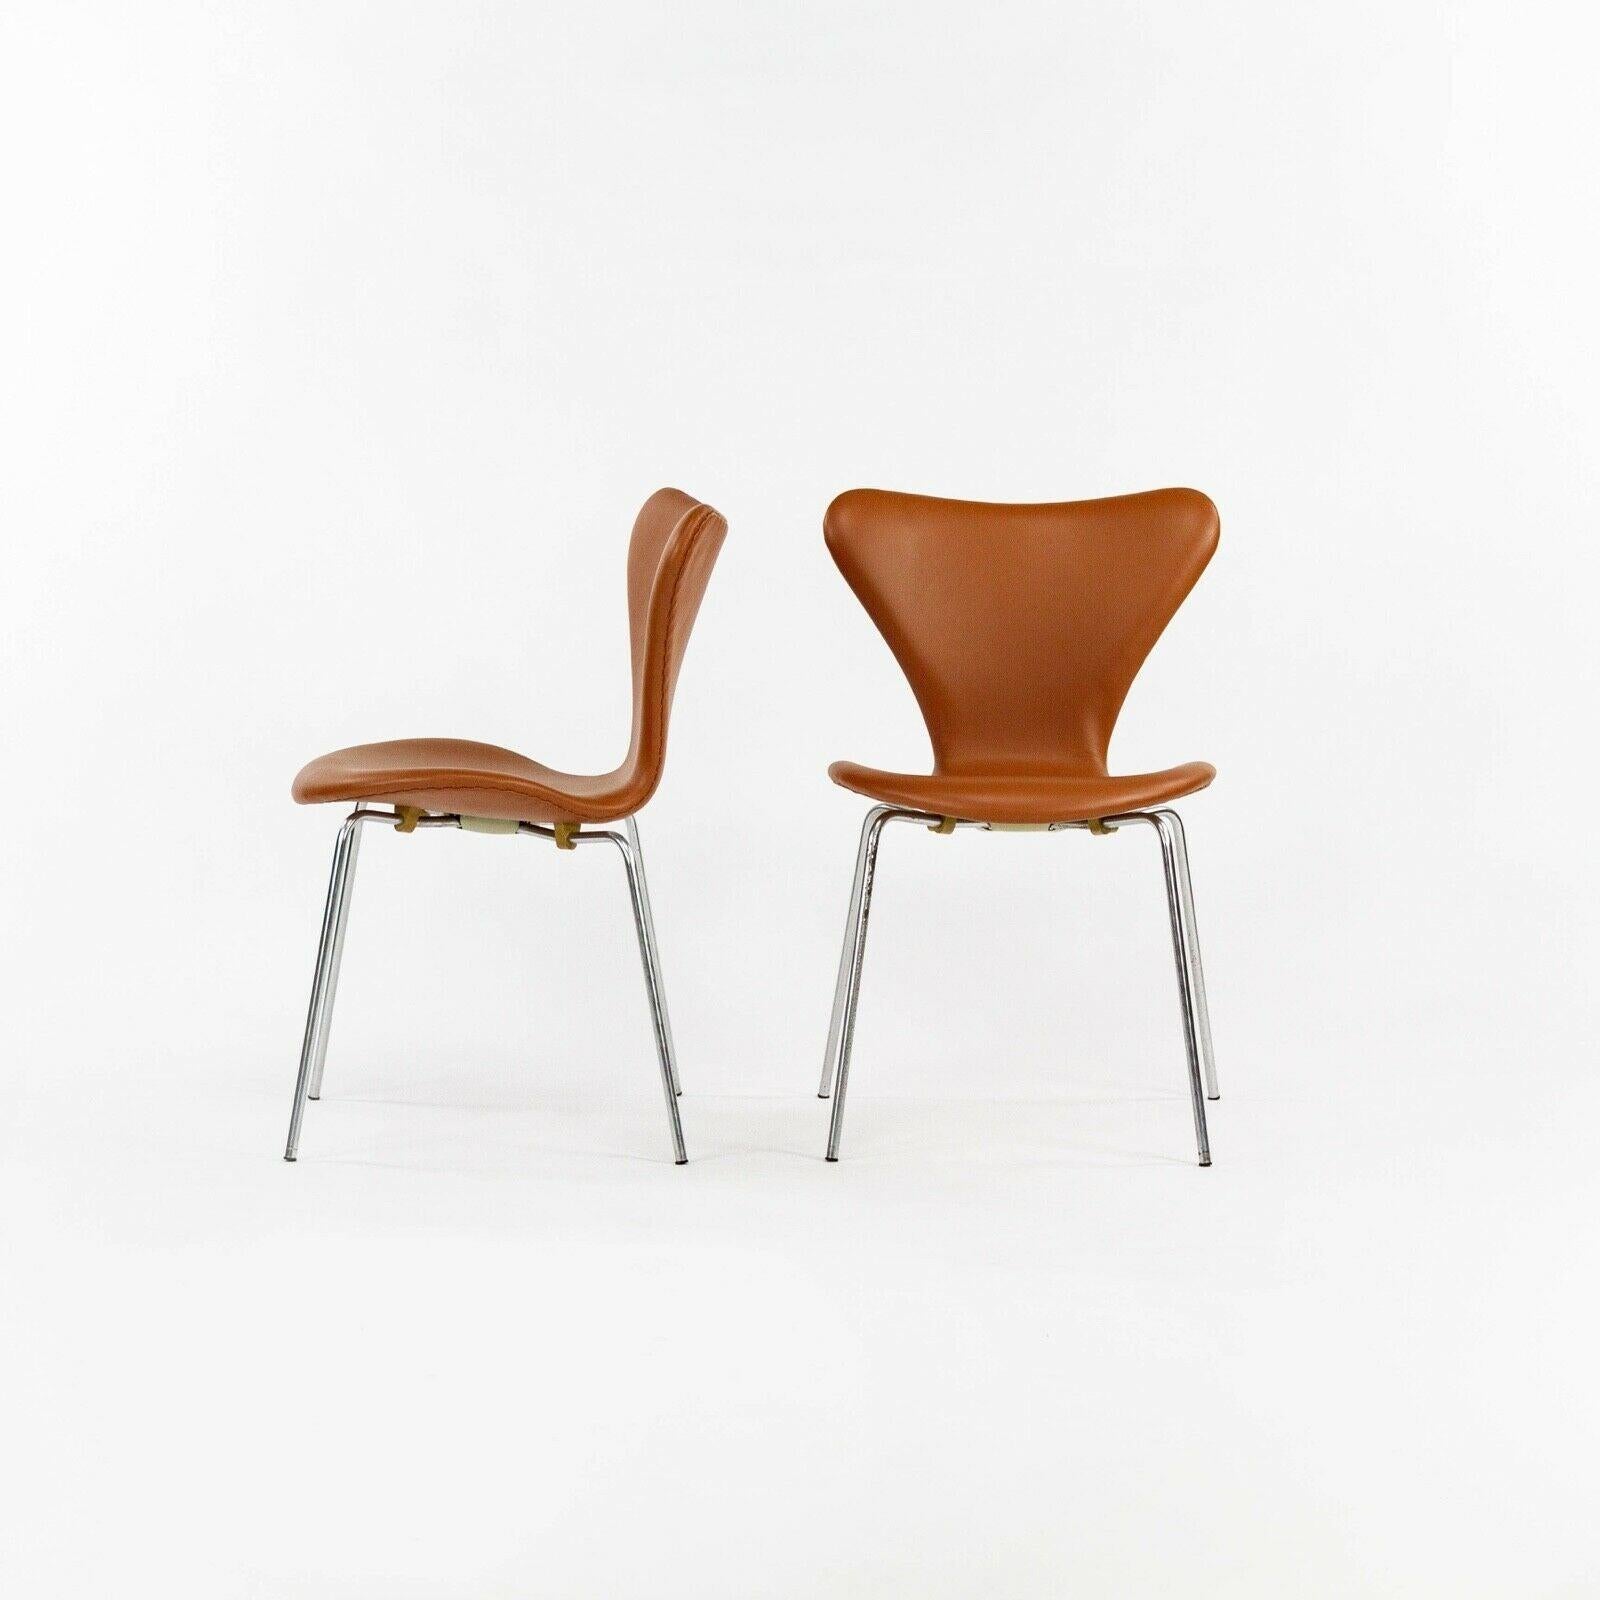 Zum Verkauf steht ein Satz von vier (der angegebene Preis gilt für vier, es sind jedoch bis zu acht Beistellstühle und auch zusätzliche Sessel erhältlich) Arne Jacobsen Serie 7 Sessel in cognacfarbenem Leder. Diese Stühle wurden gerade von einer der